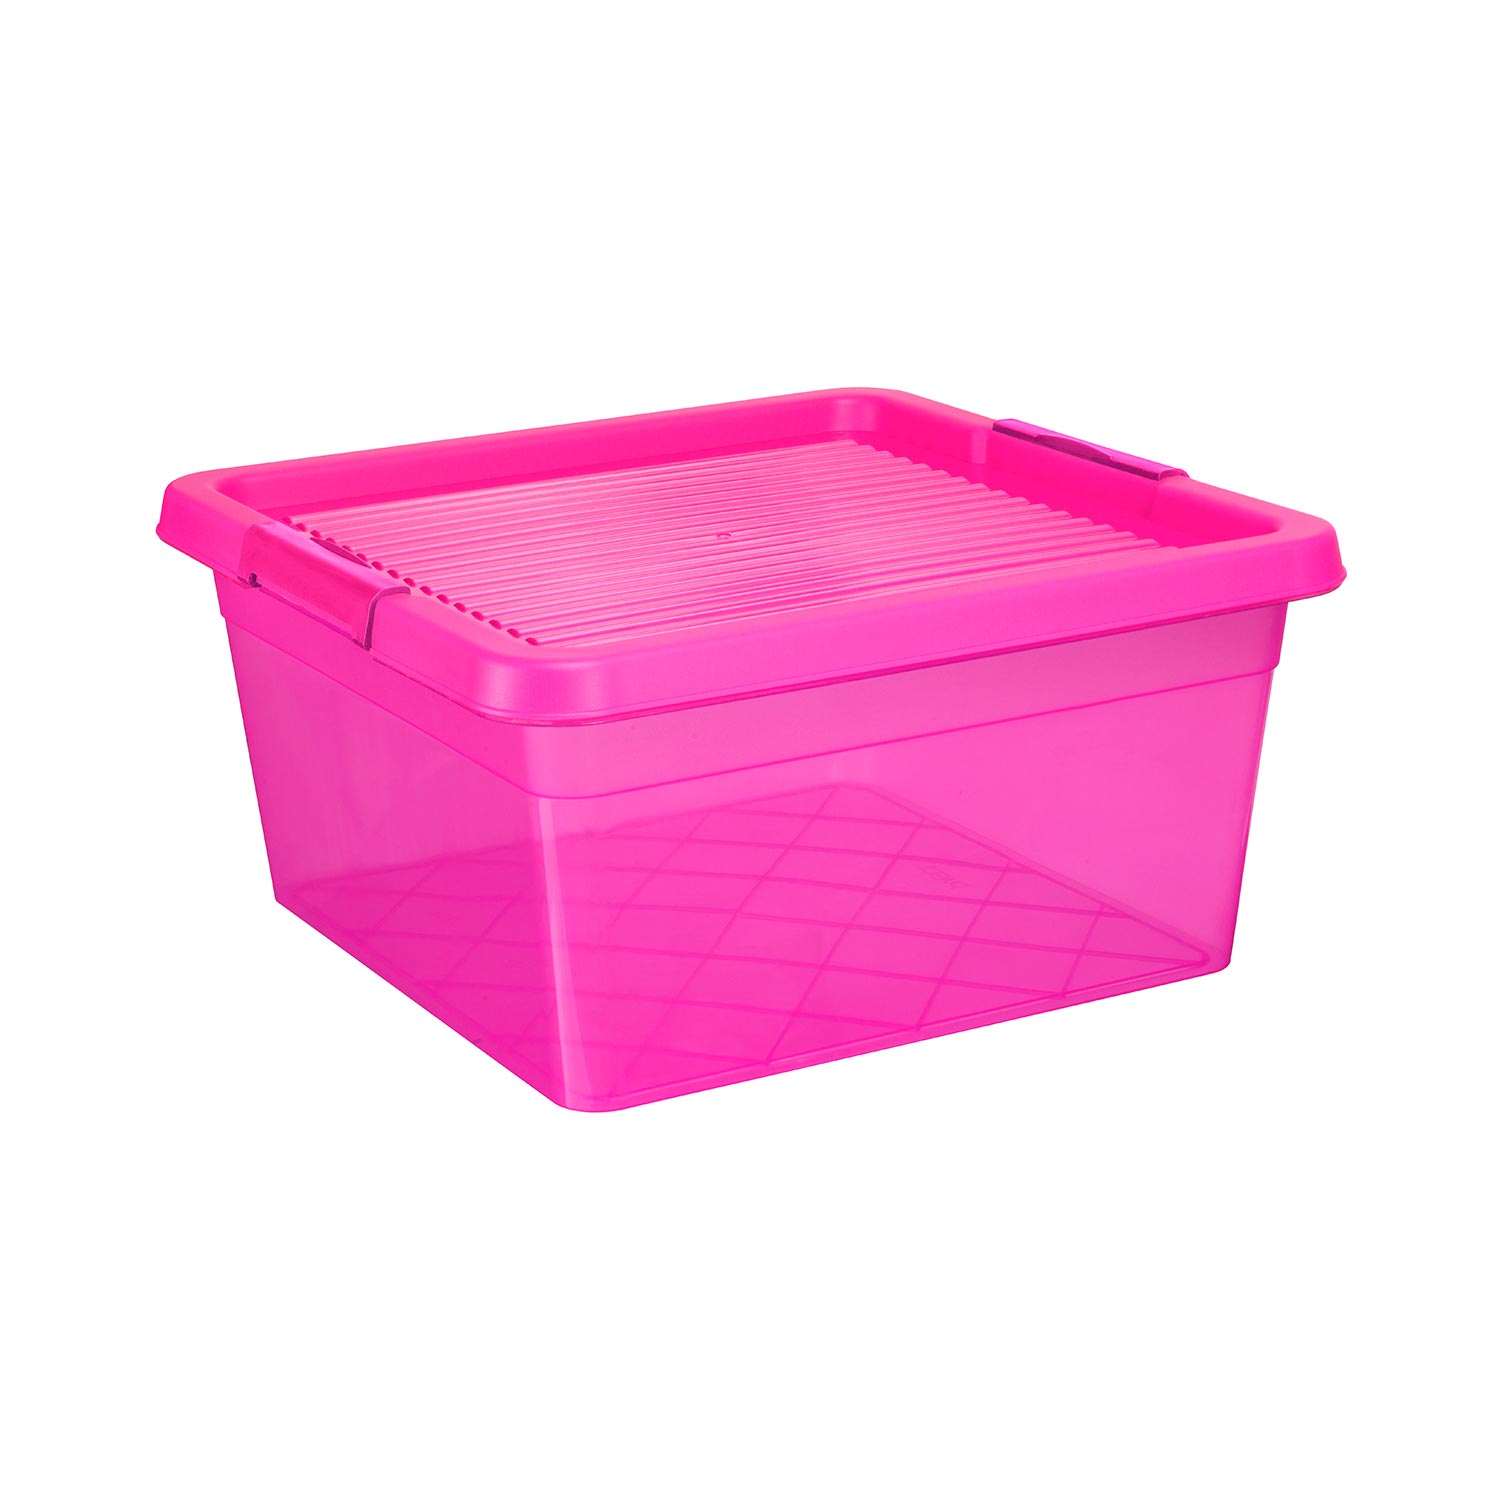 Aufbewahrungsbox "Box One" 20 L in transparenten pink, Kunststoffbox